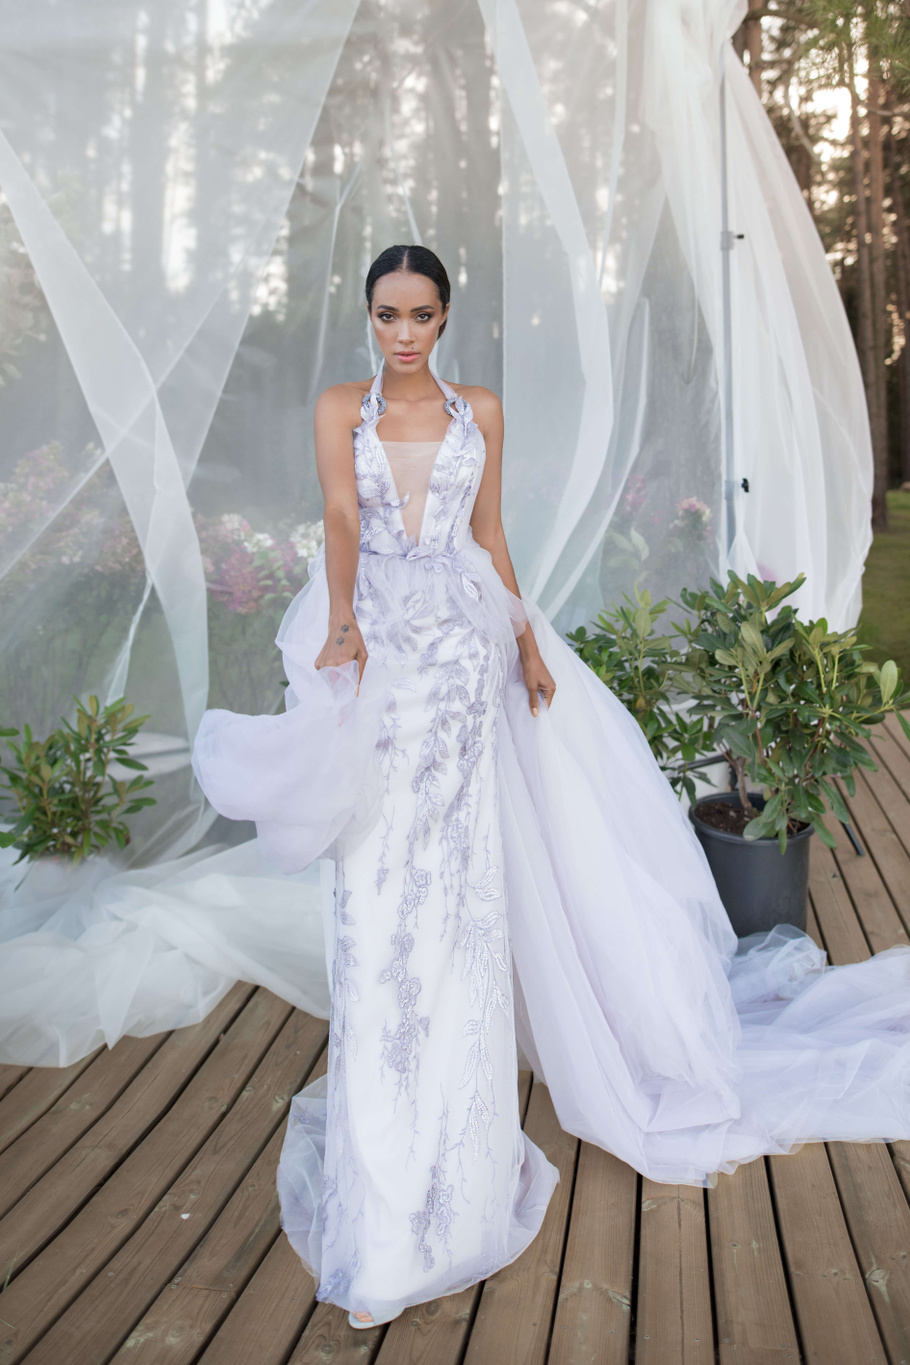 Купить свадебное платье «Луи» Бламмо Биамо из коллекции Нимфа 2020 года в Санкт-Петербурге